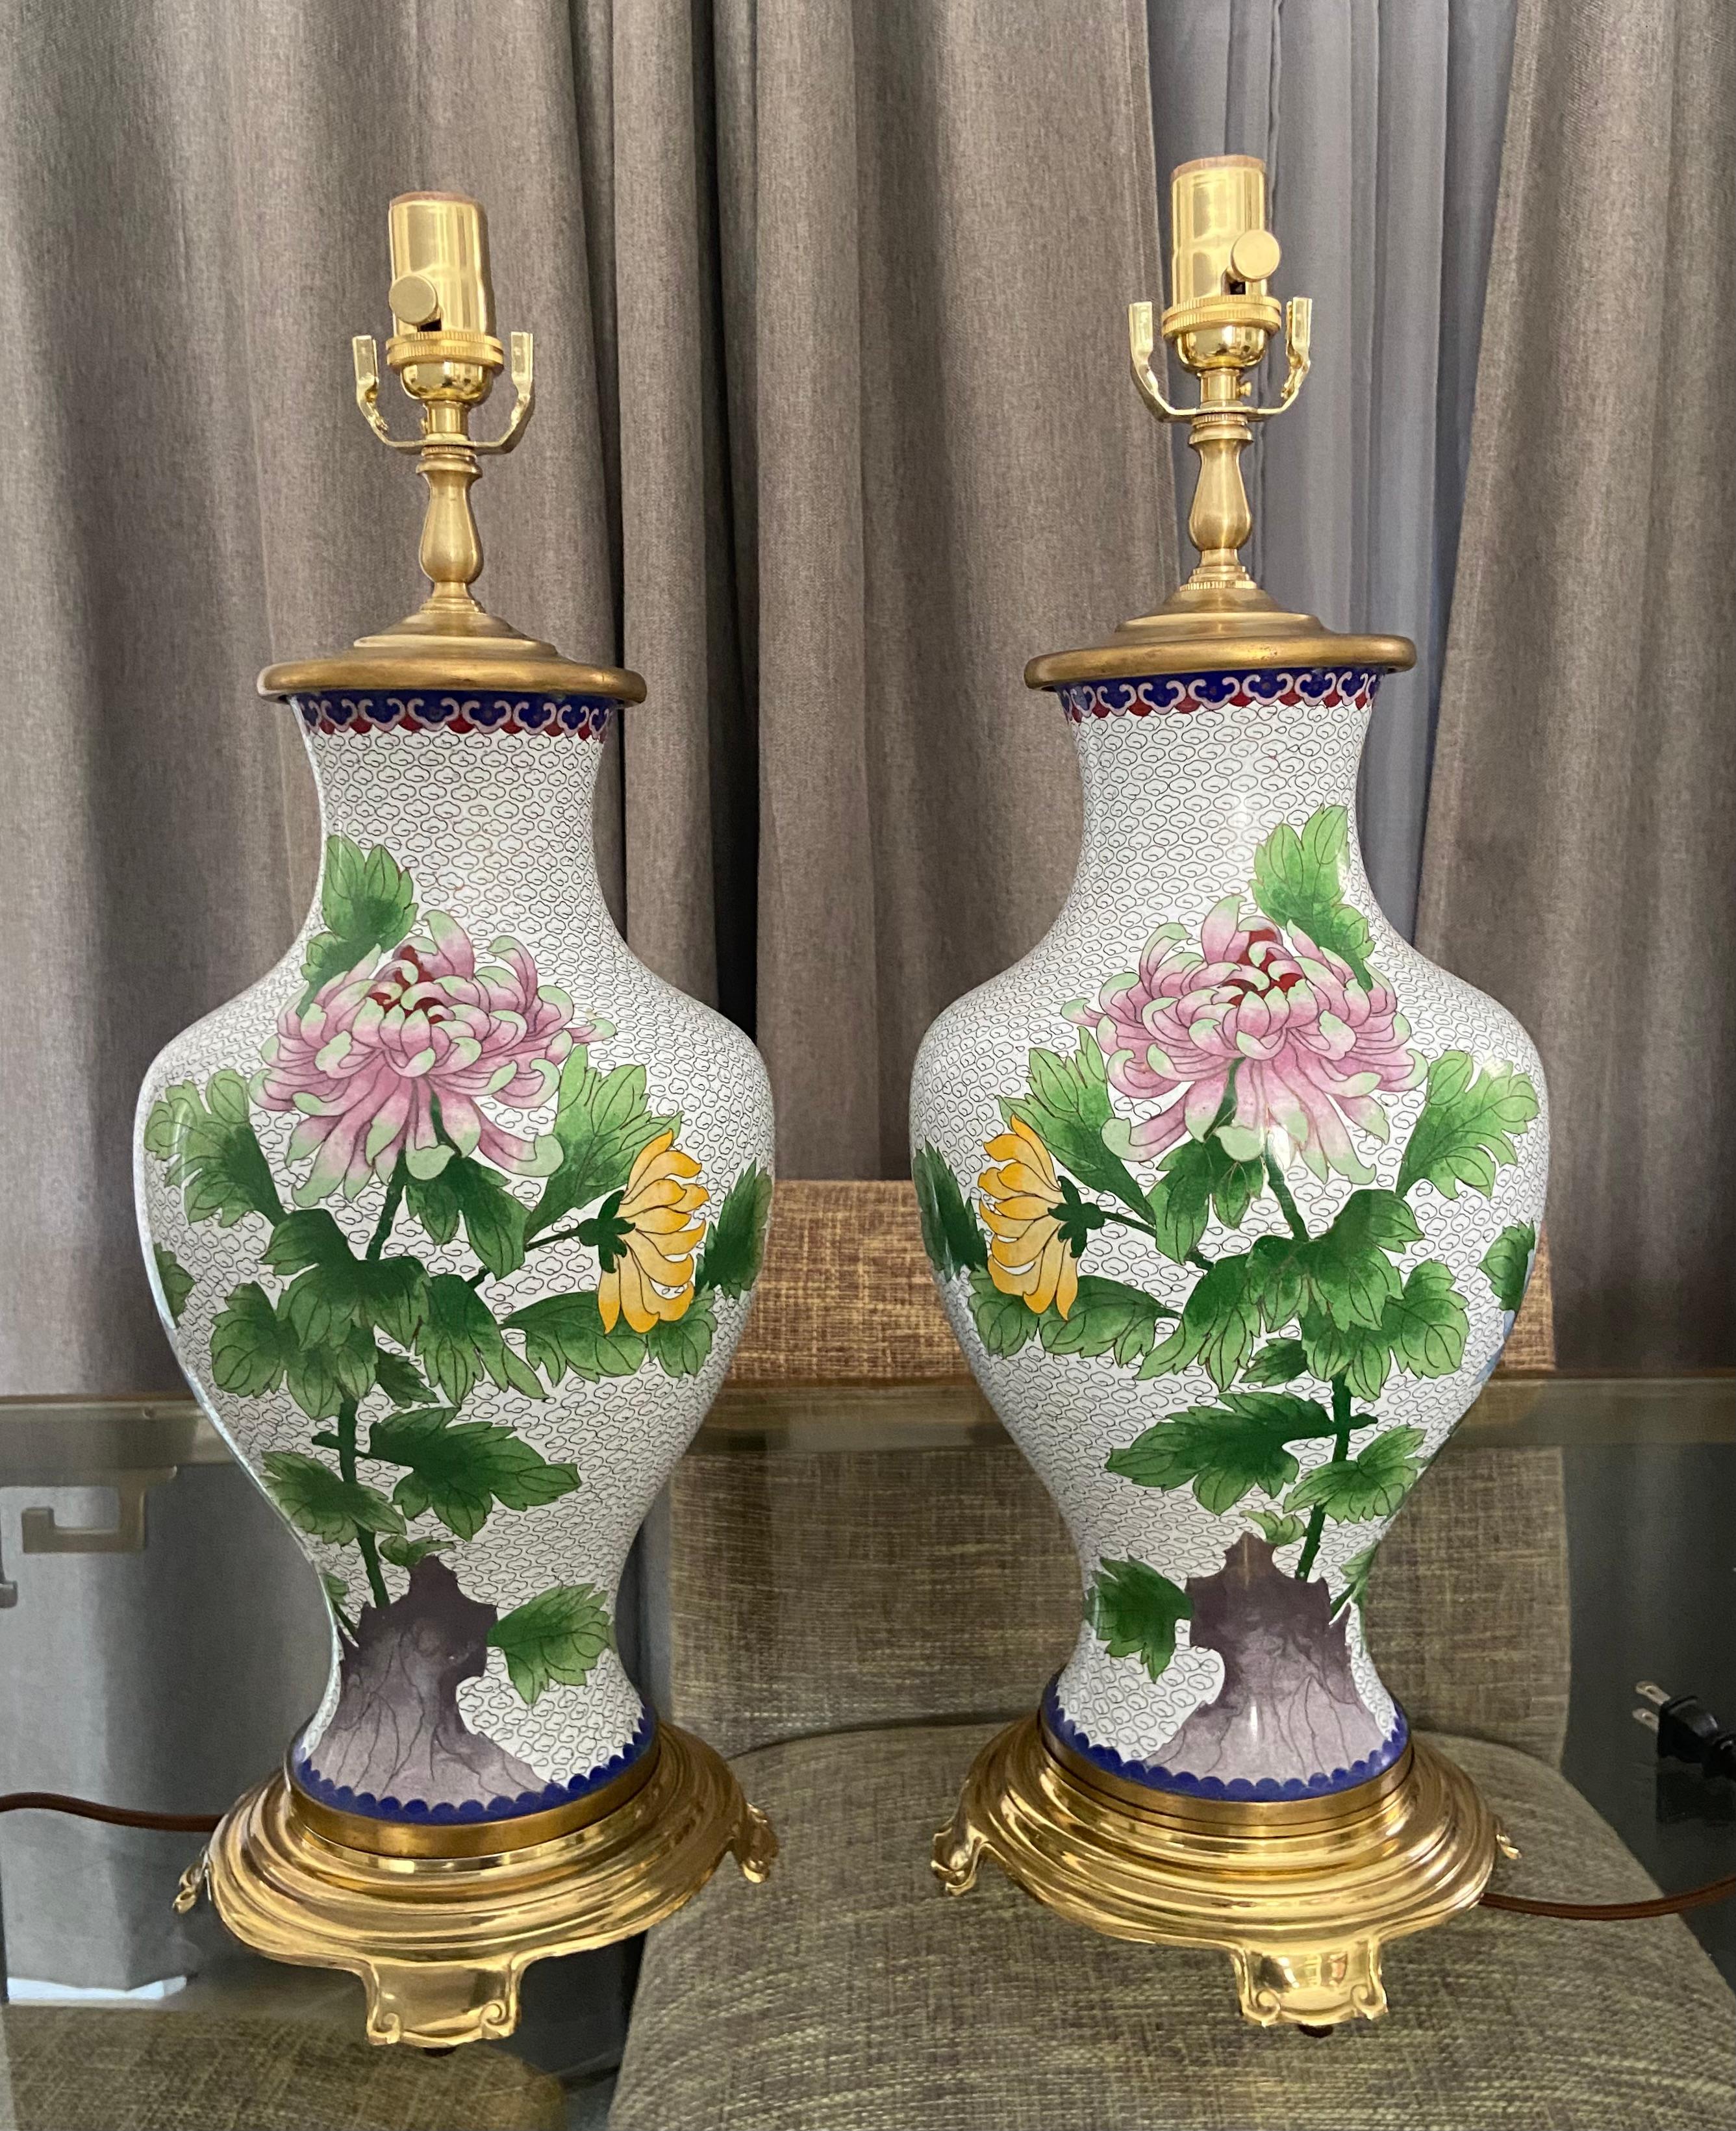 Paire de lampes de table chinoises du début du 20e siècle à motif floral cloisonné, montées sur des bases en laiton. Rééquipement avec de nouvelles prises à 3 voies et des cordons en rayonne. Hauteur du vase cloisonné 20